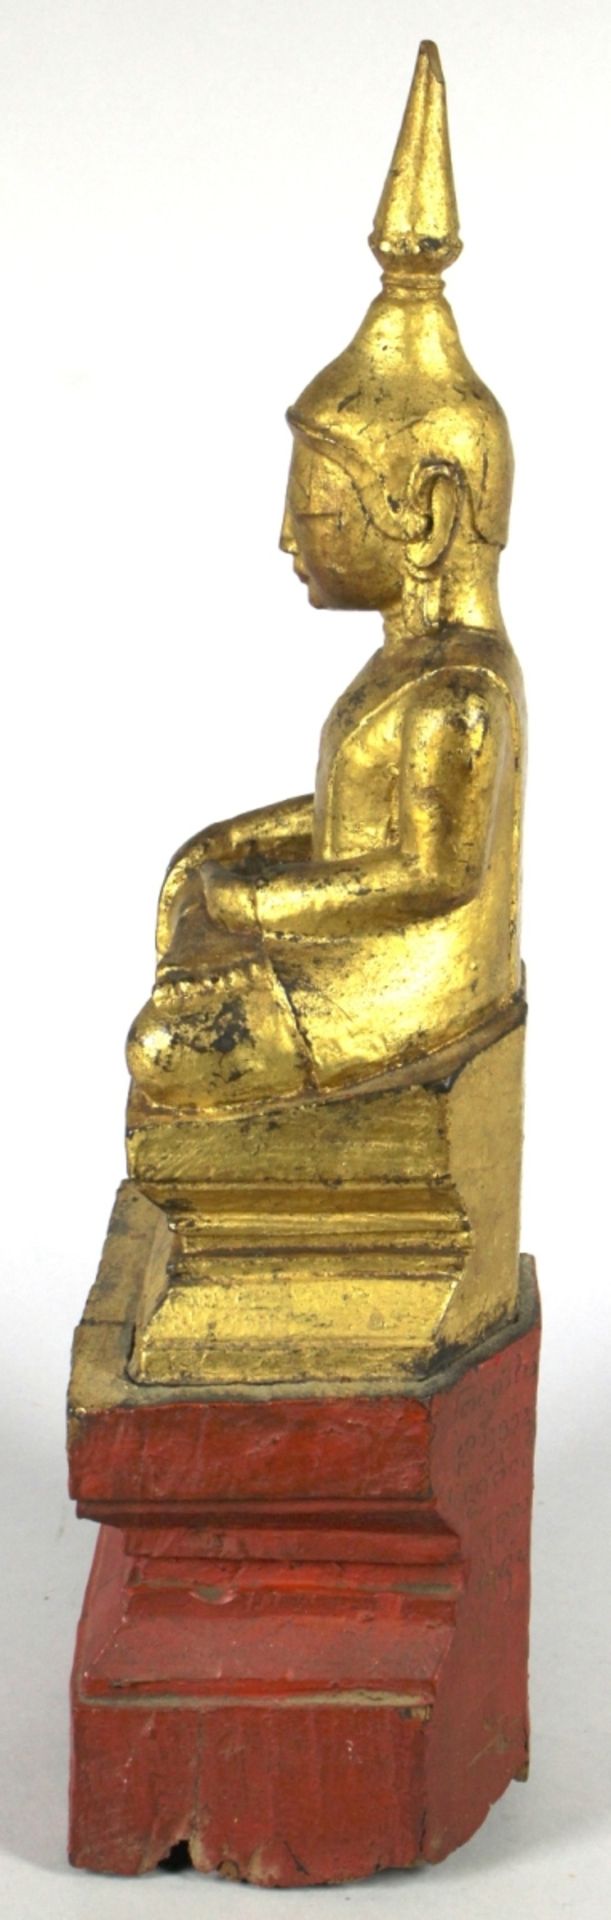 Holz-Buddha, Burma, 18./19. Jh., auf gestuftem Rechteckpodest gestufter Rechtecksockel - Bild 2 aus 5